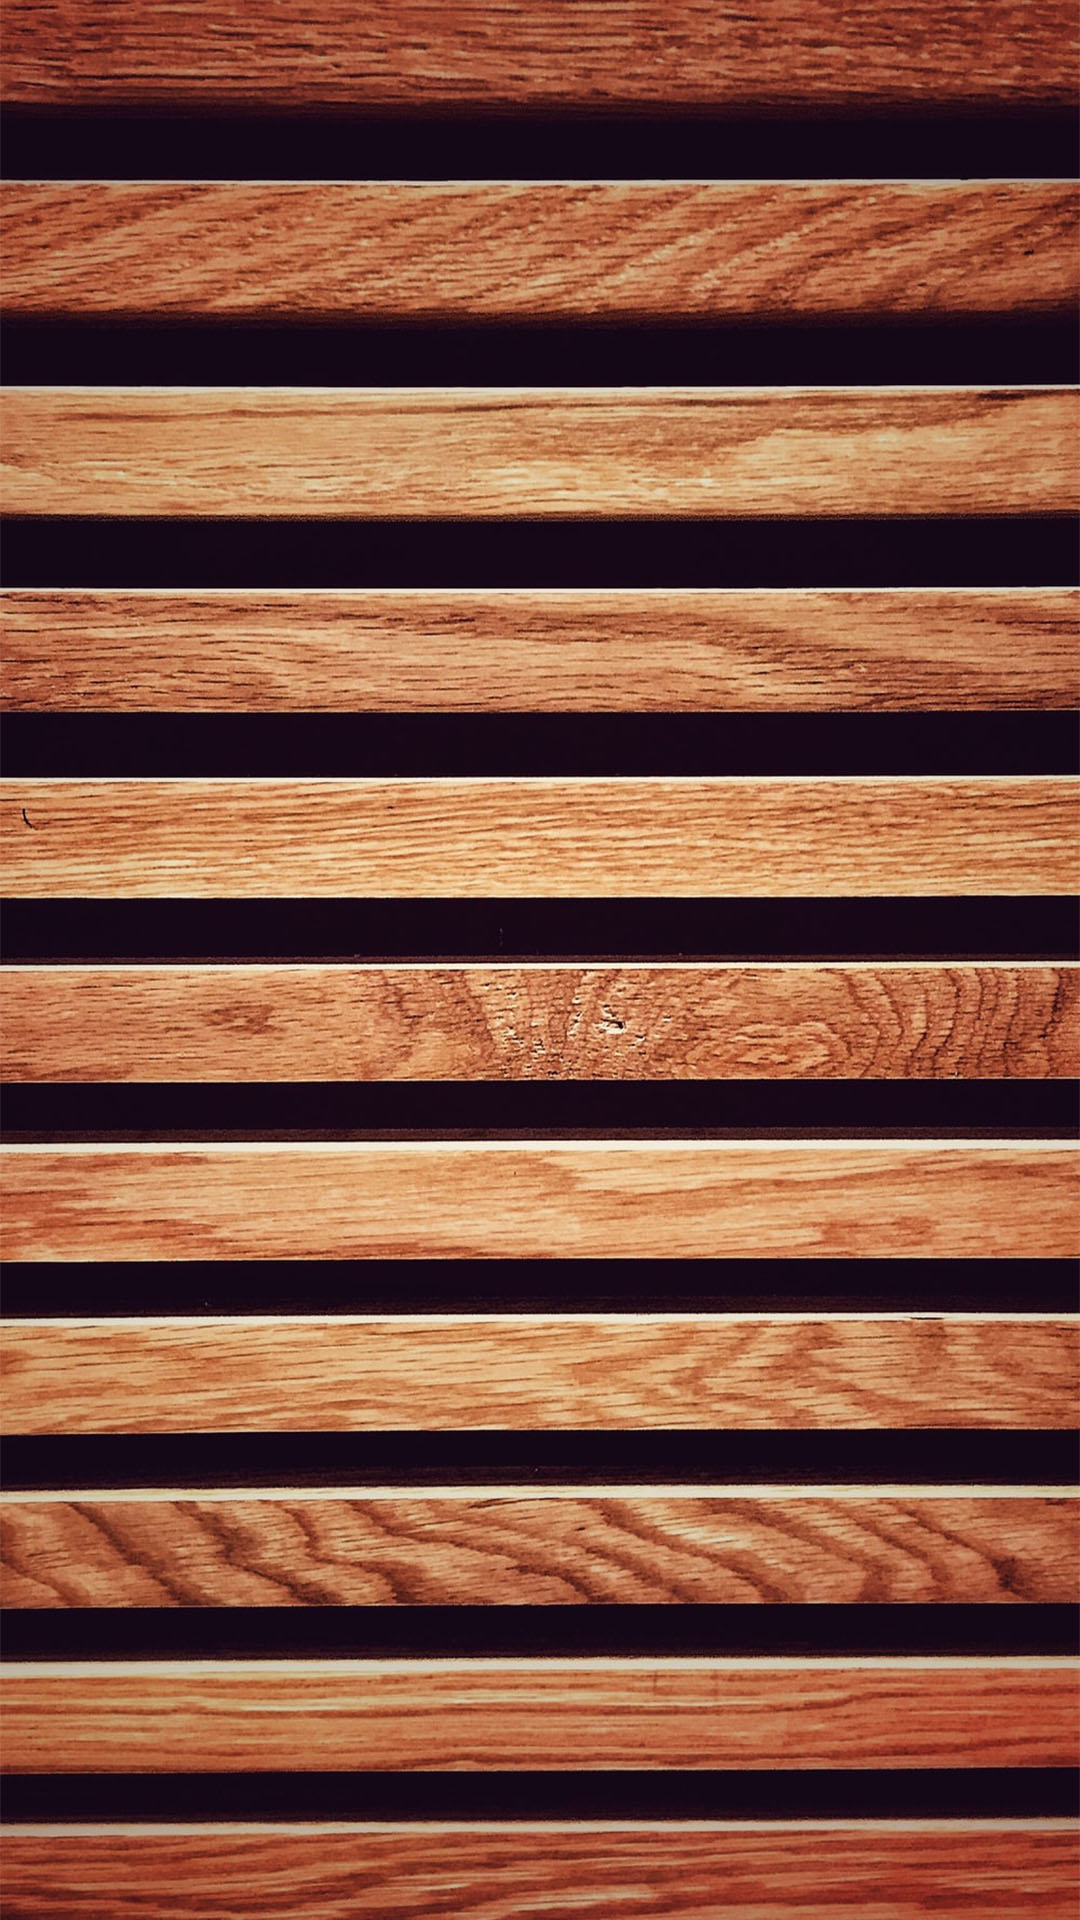 Hình nền gỗ: Hình nền gỗ mang đến cảm giác ấm áp và thuần khiết, giúp bạn thư giãn và tận hưởng cuộc sống thật đơn giản nhưng đầy ý nghĩa. Hãy xem hình ảnh và lựa chọn cho mình một hình nền gỗ phù hợp nhất.